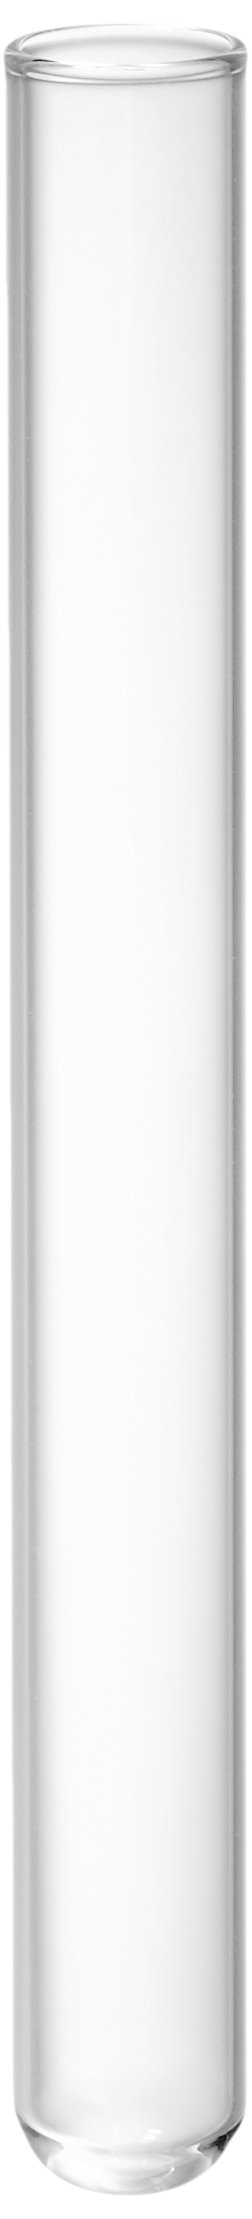 neoLab E-2412 Reagenzgläser, AR-Glas, 14,5 mm Durchmesser, 135 mm lang (100-er Pack)